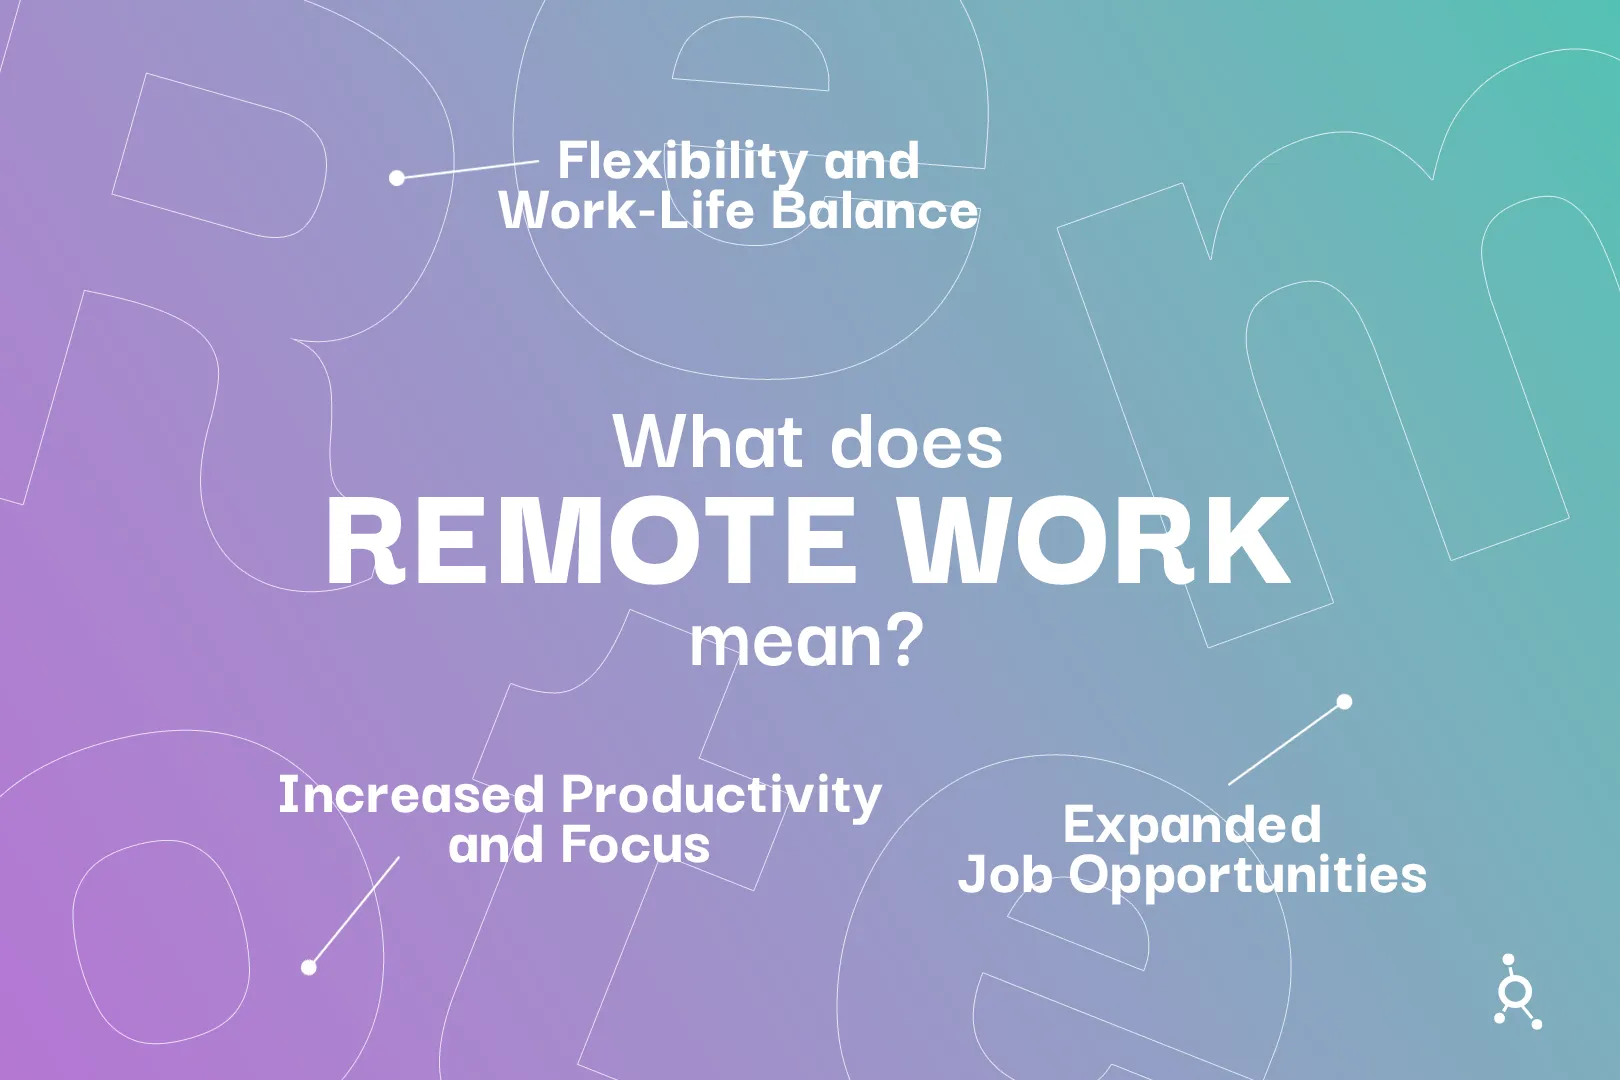 Remote work mean